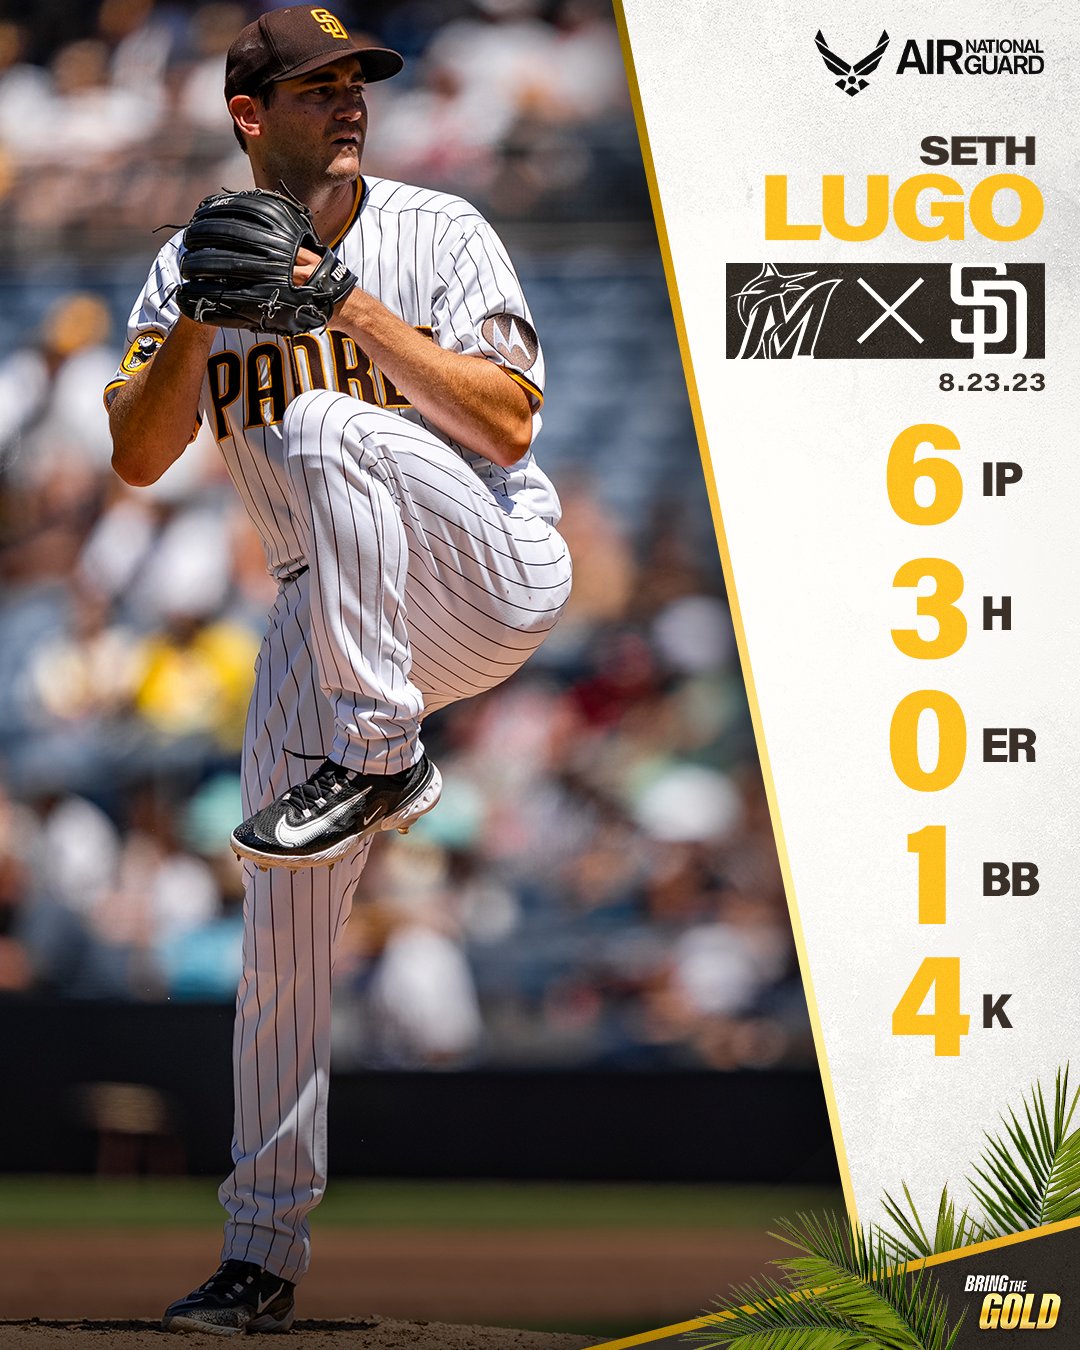 San Diego Padres - Lining up behind Lugo. #BringTheGold